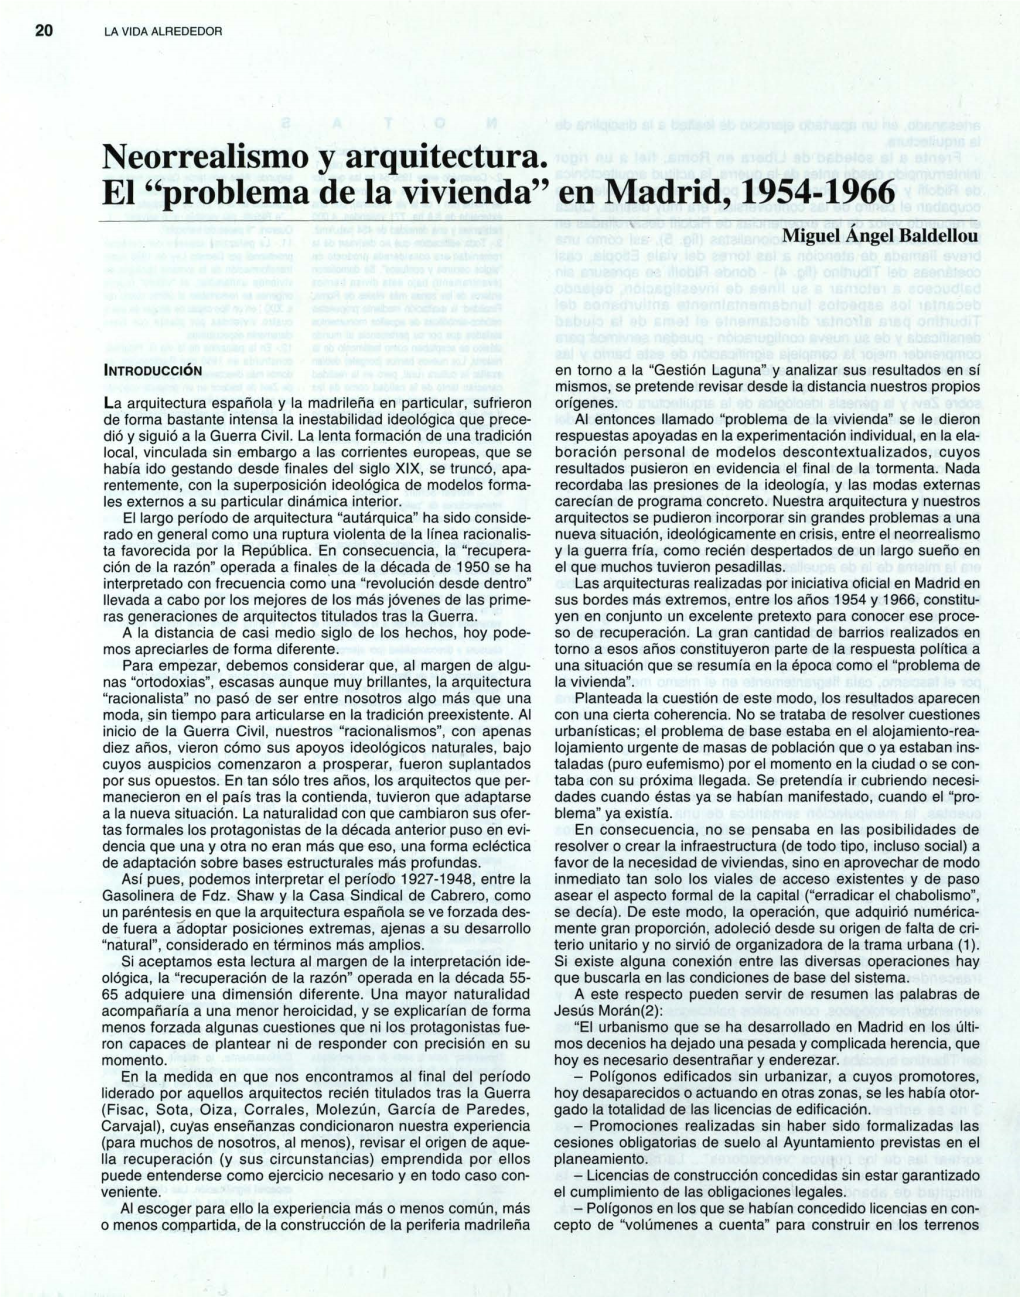 Neorrealismo Y Arquitectura. El "Problema De La Vivienda" En Madrid, 1954-1966 Miguel Ángel Baldellou